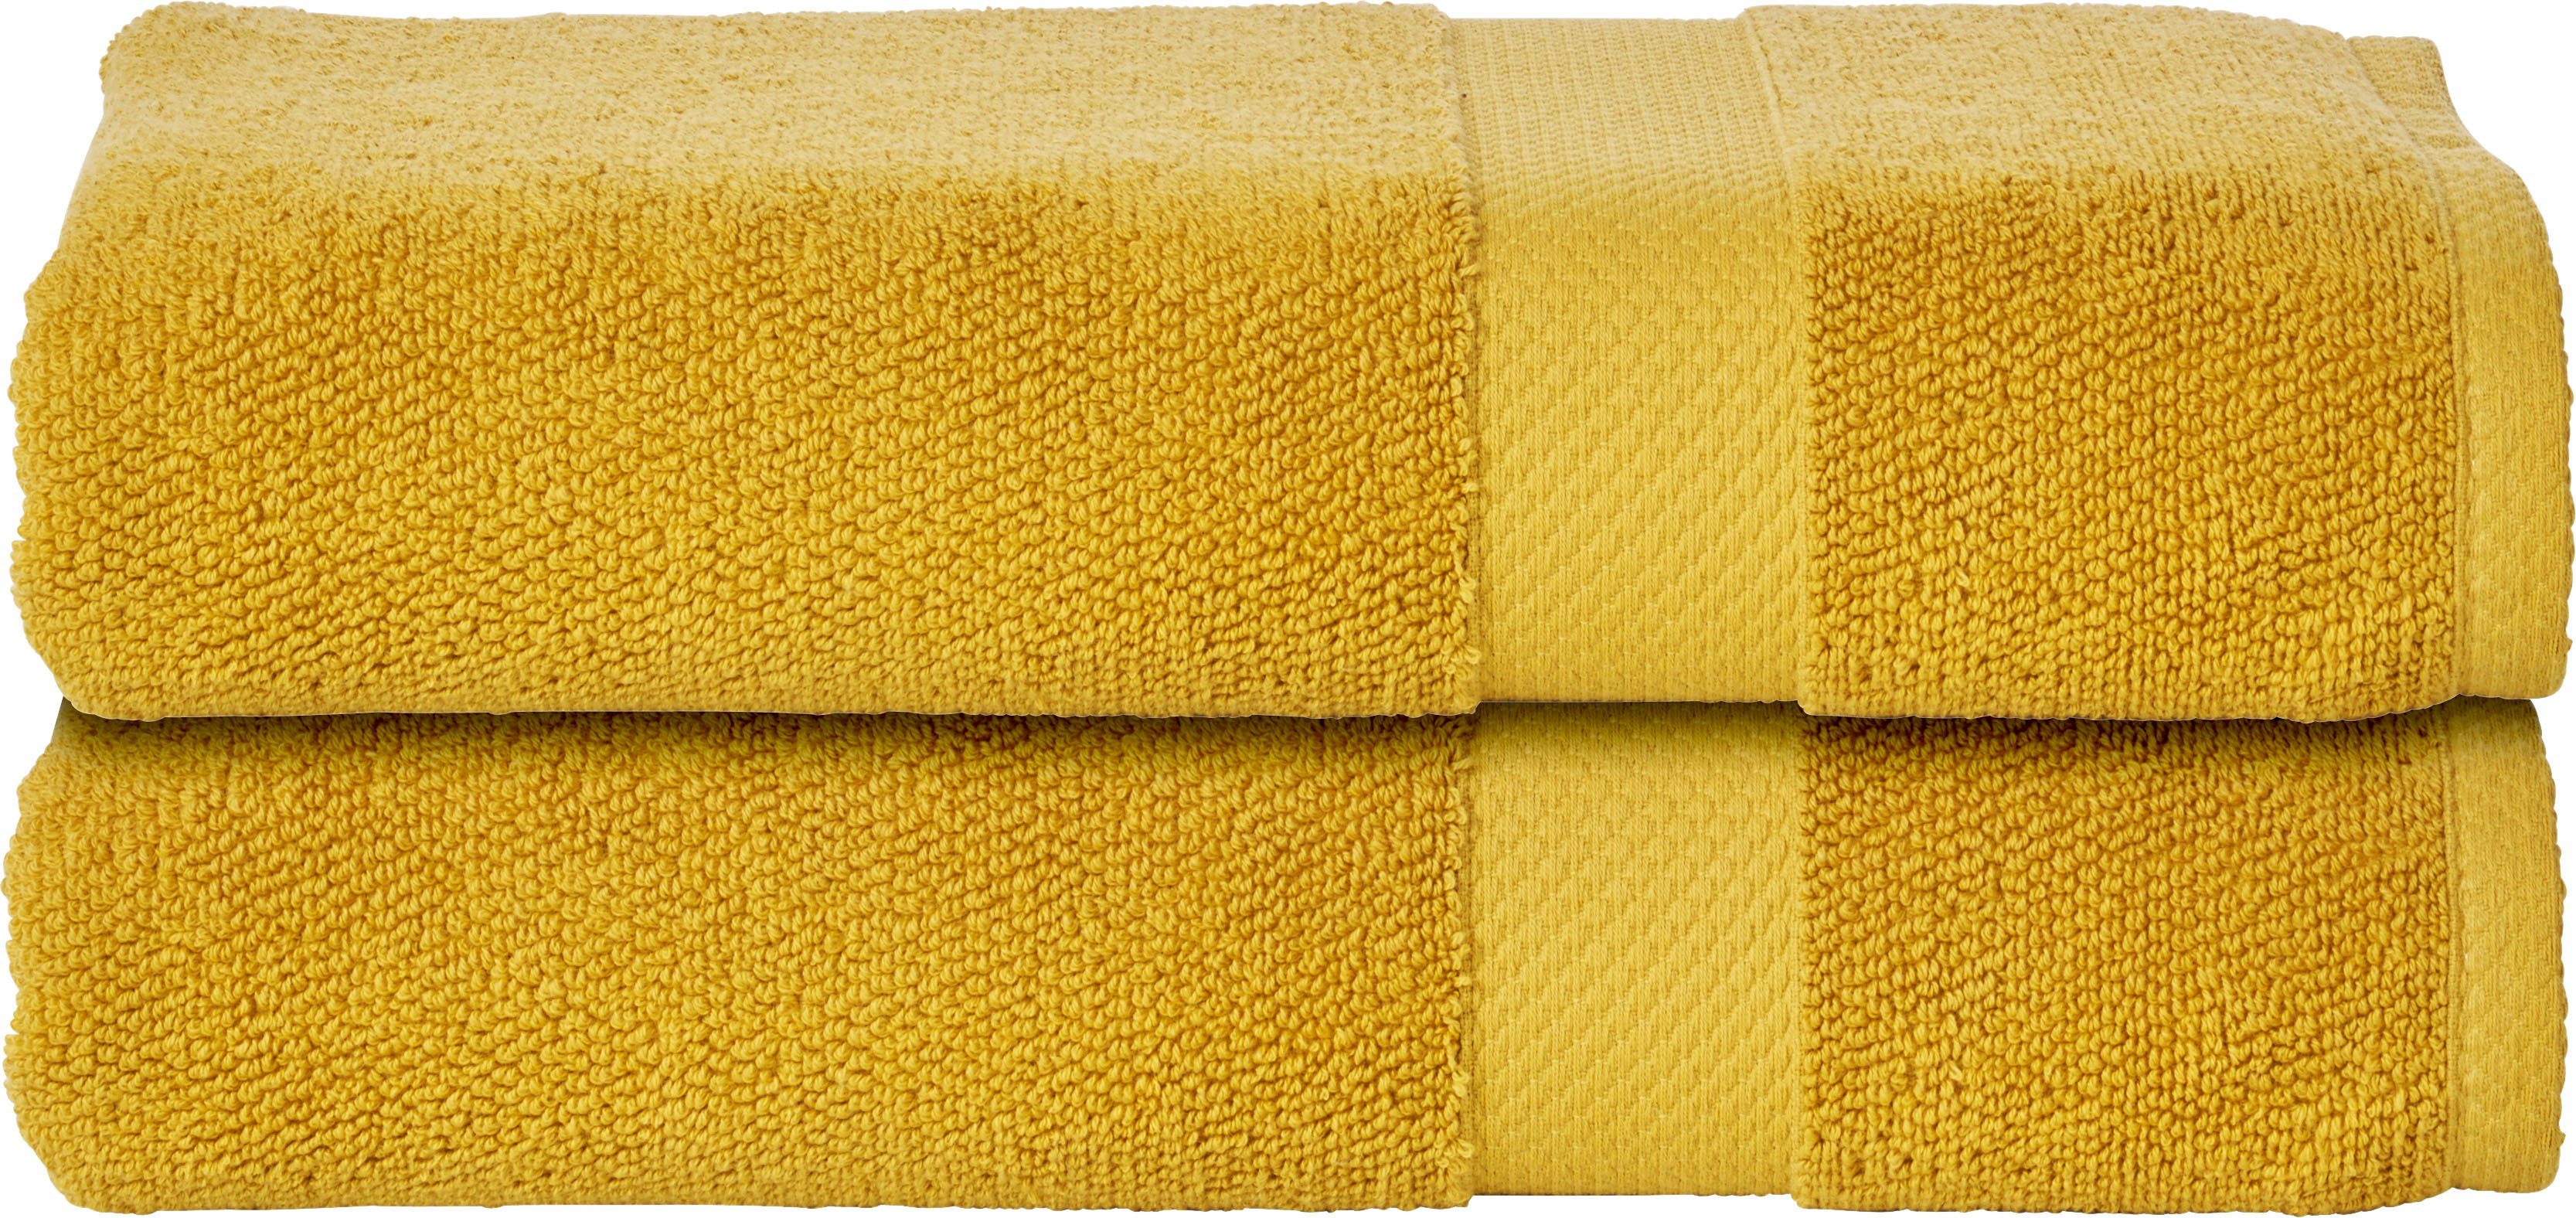 Goldene Handtücher online kaufen » Gold Handtücher | OTTO